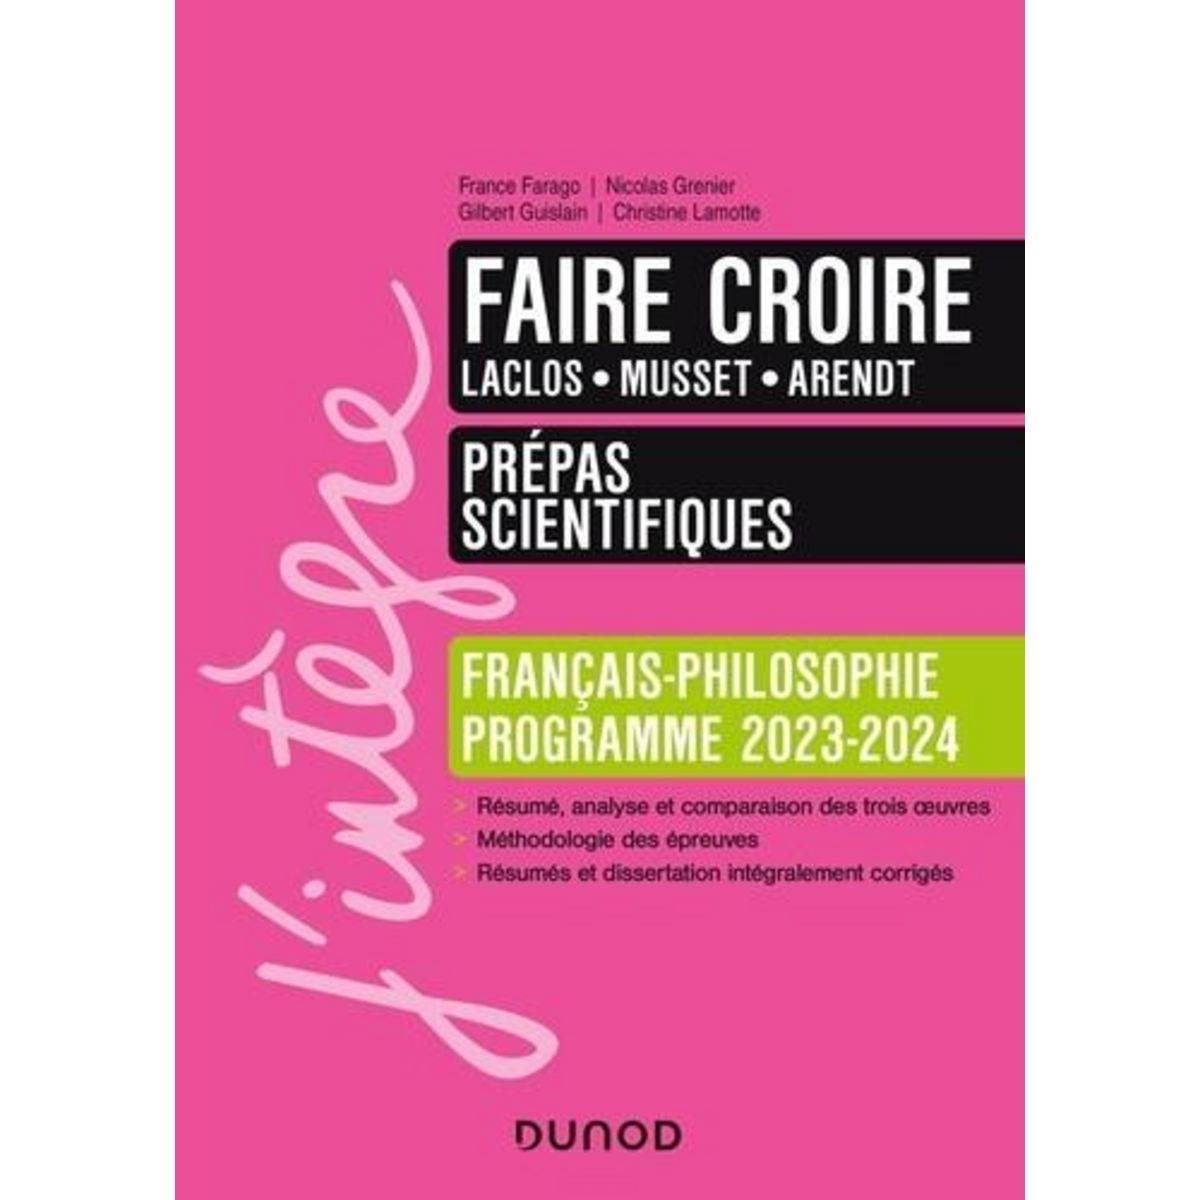  FRANCAIS-PHILOSOPHIE FAIRE CROIRE. LACLOS, MUSSET, ARENDT, EDITION 2023-2024, Farago France